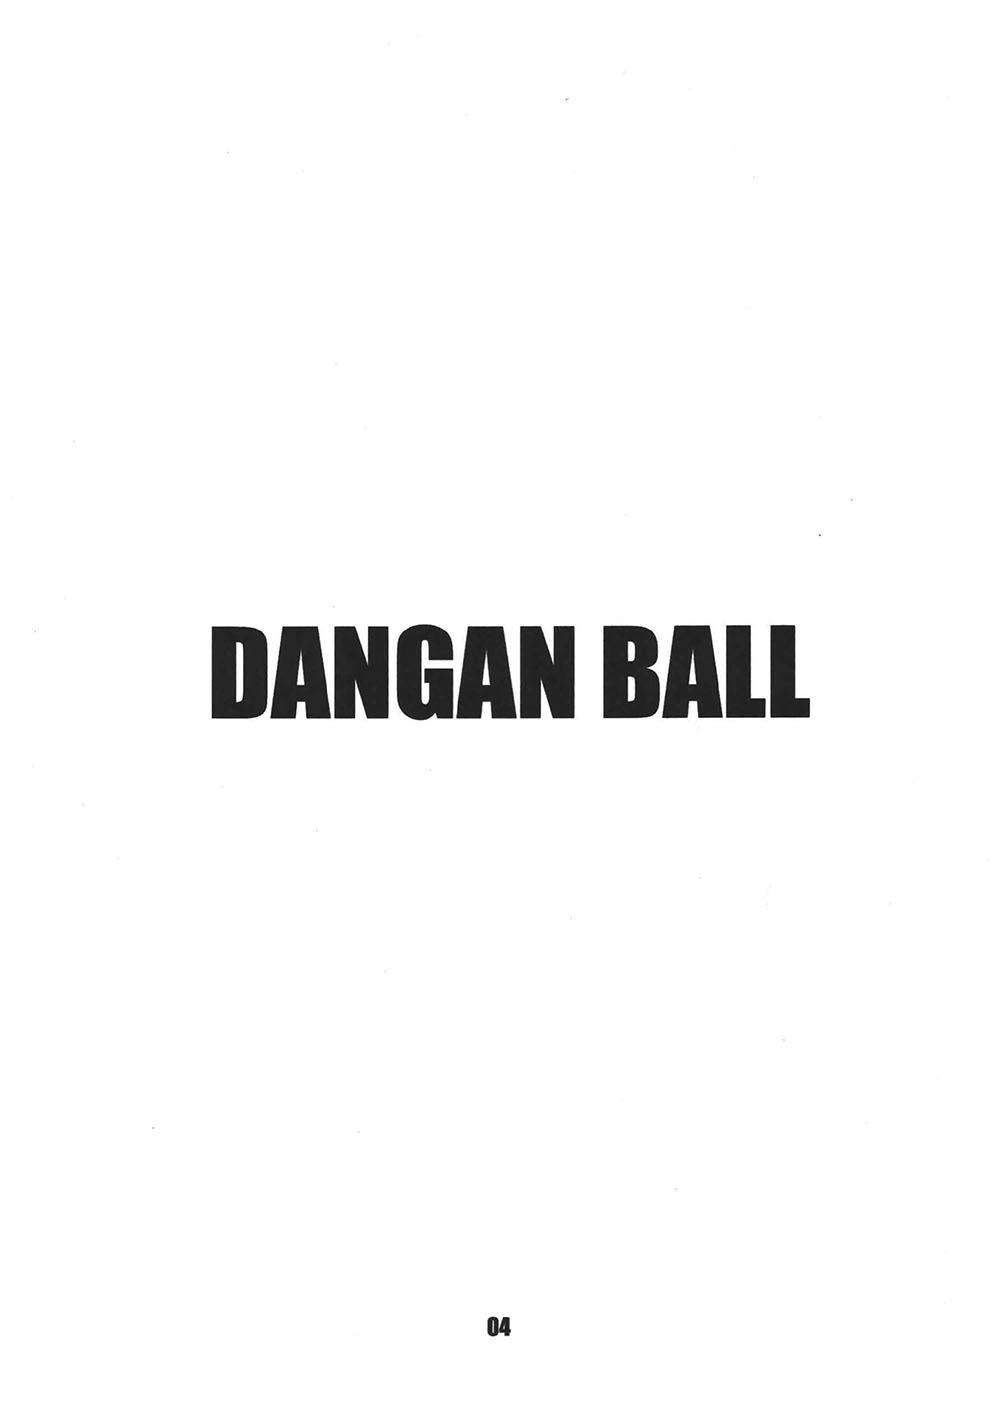 DANGAN BALL Vol 1